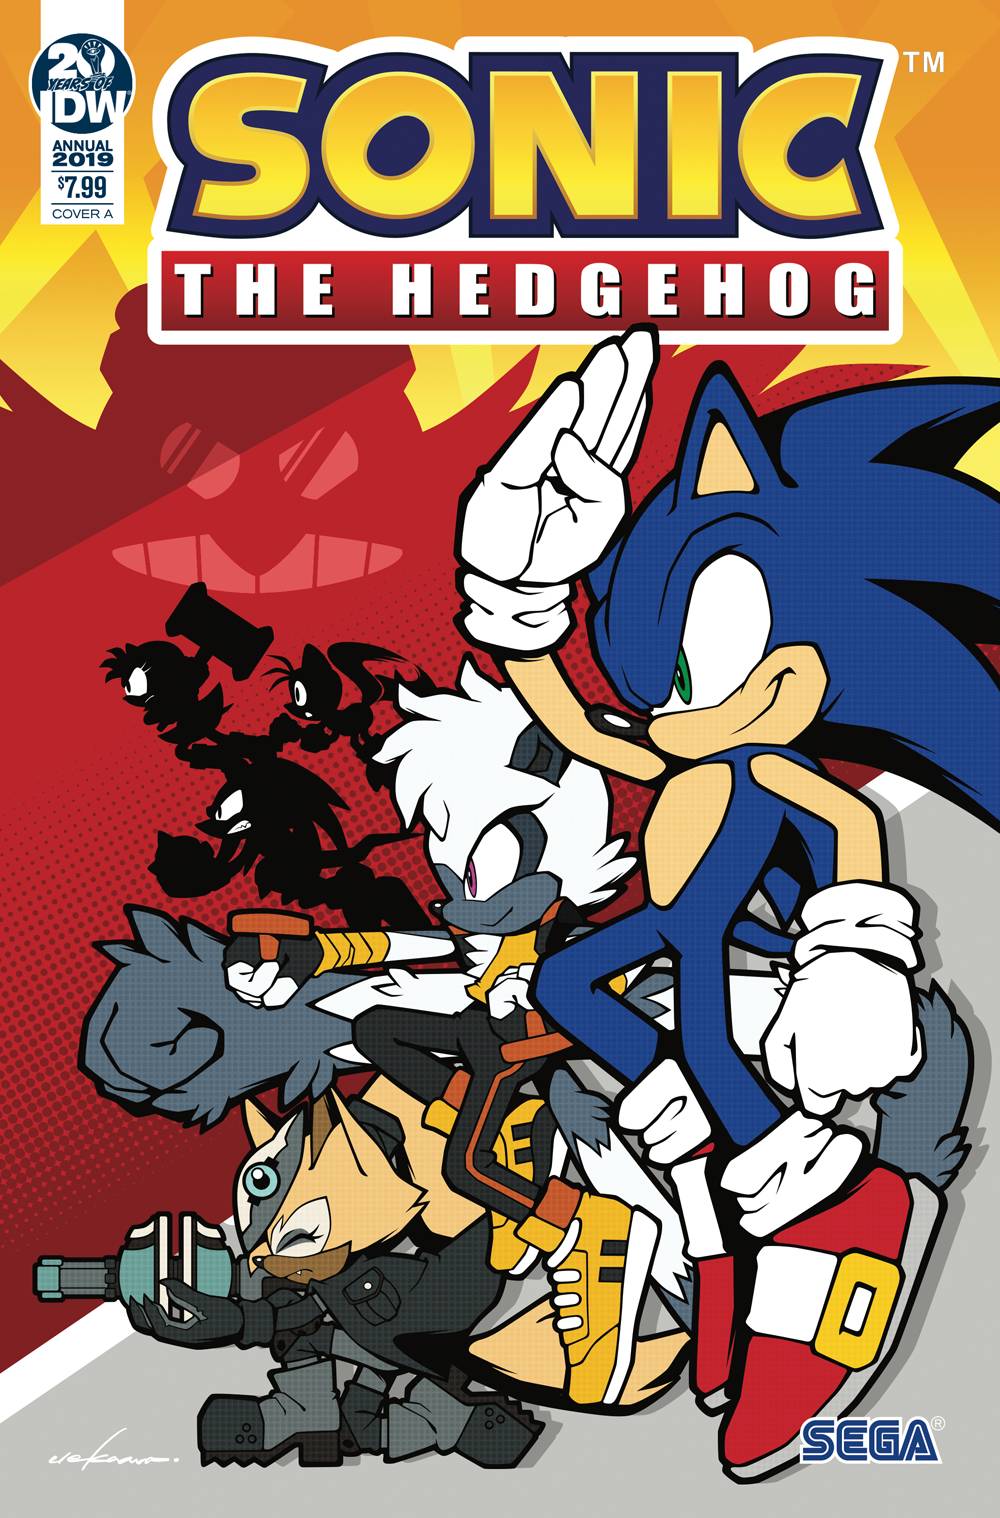 Sonic The Hedgehog Annual 2019 Cover A (Uekawa) [2019]